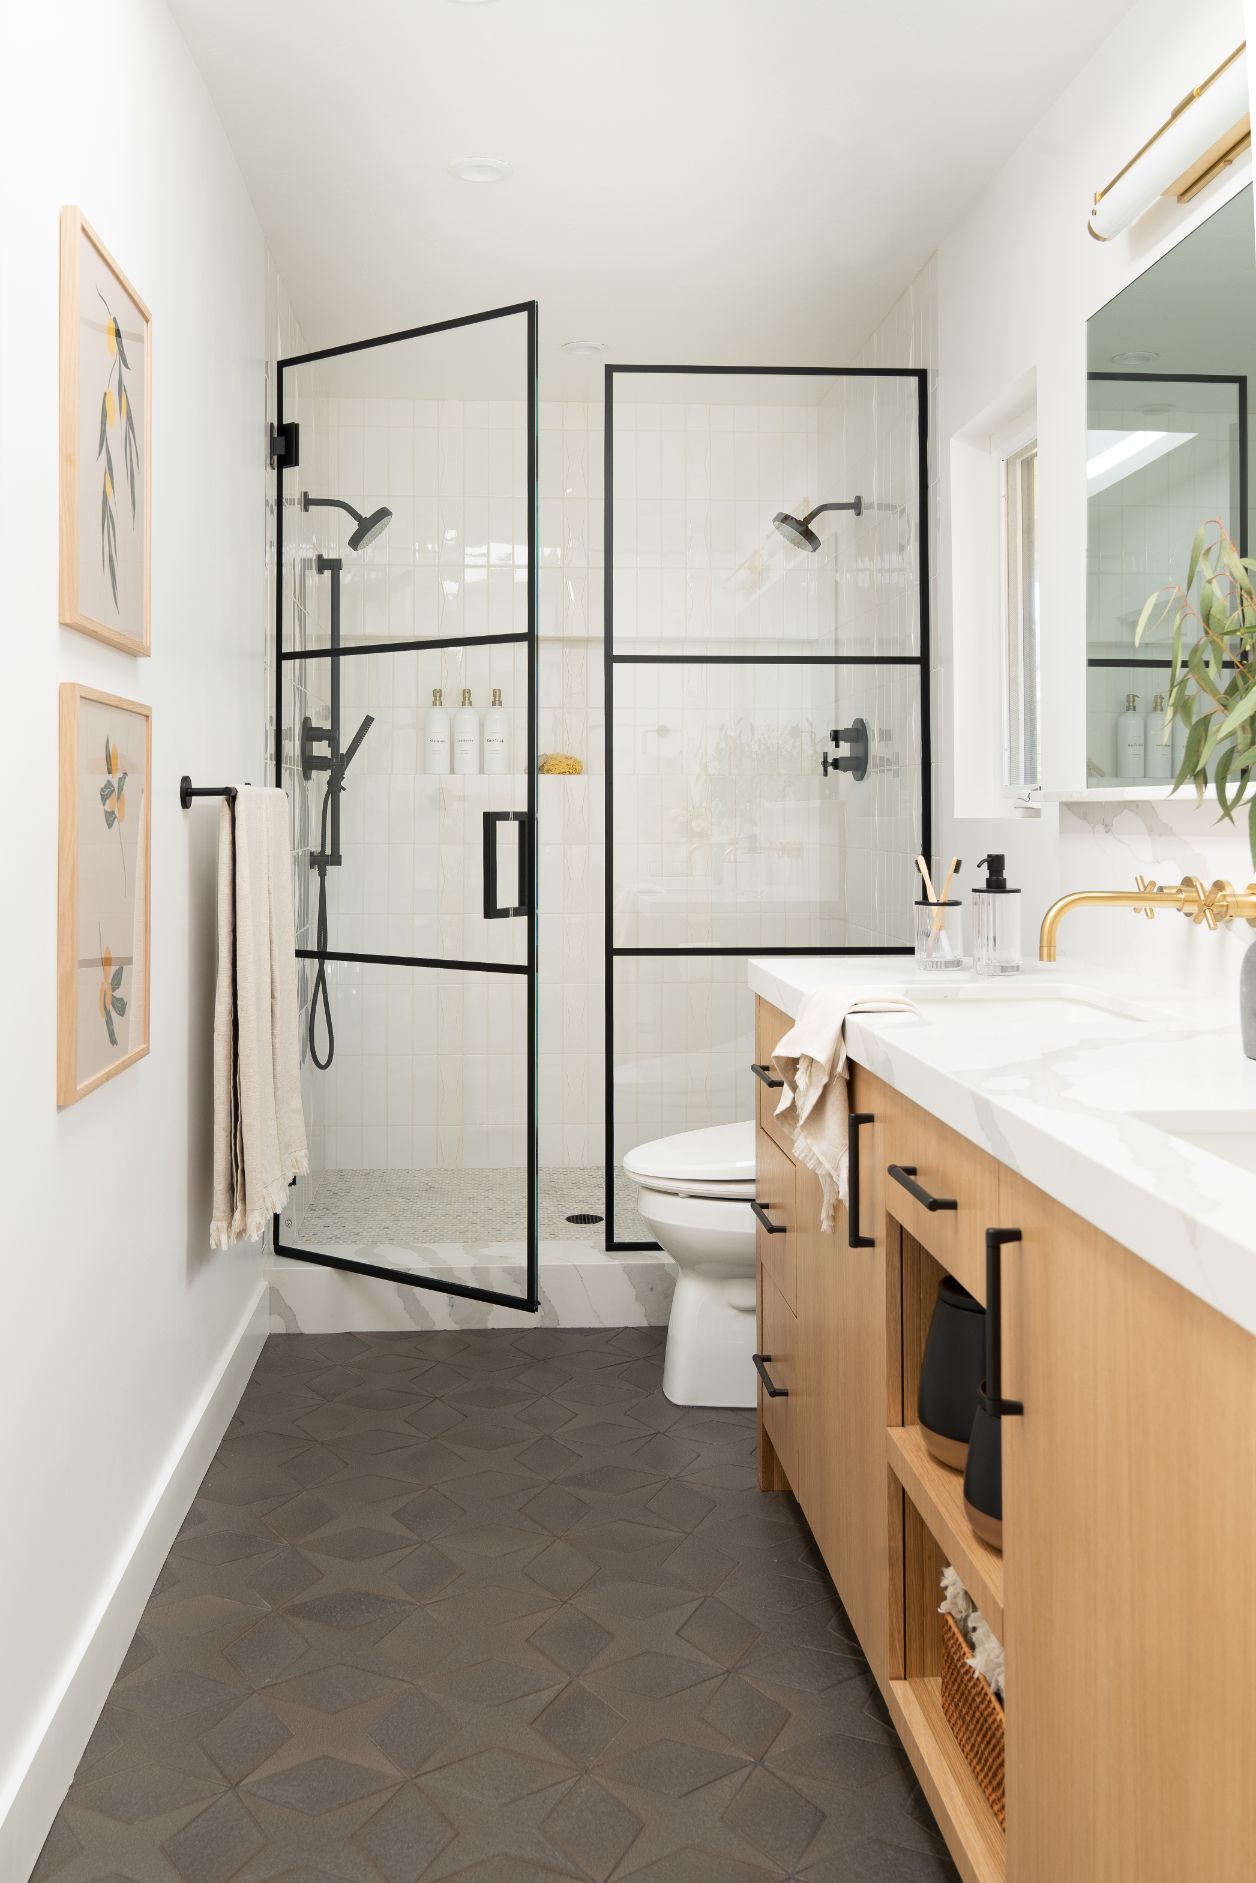 Interior design of modern shower